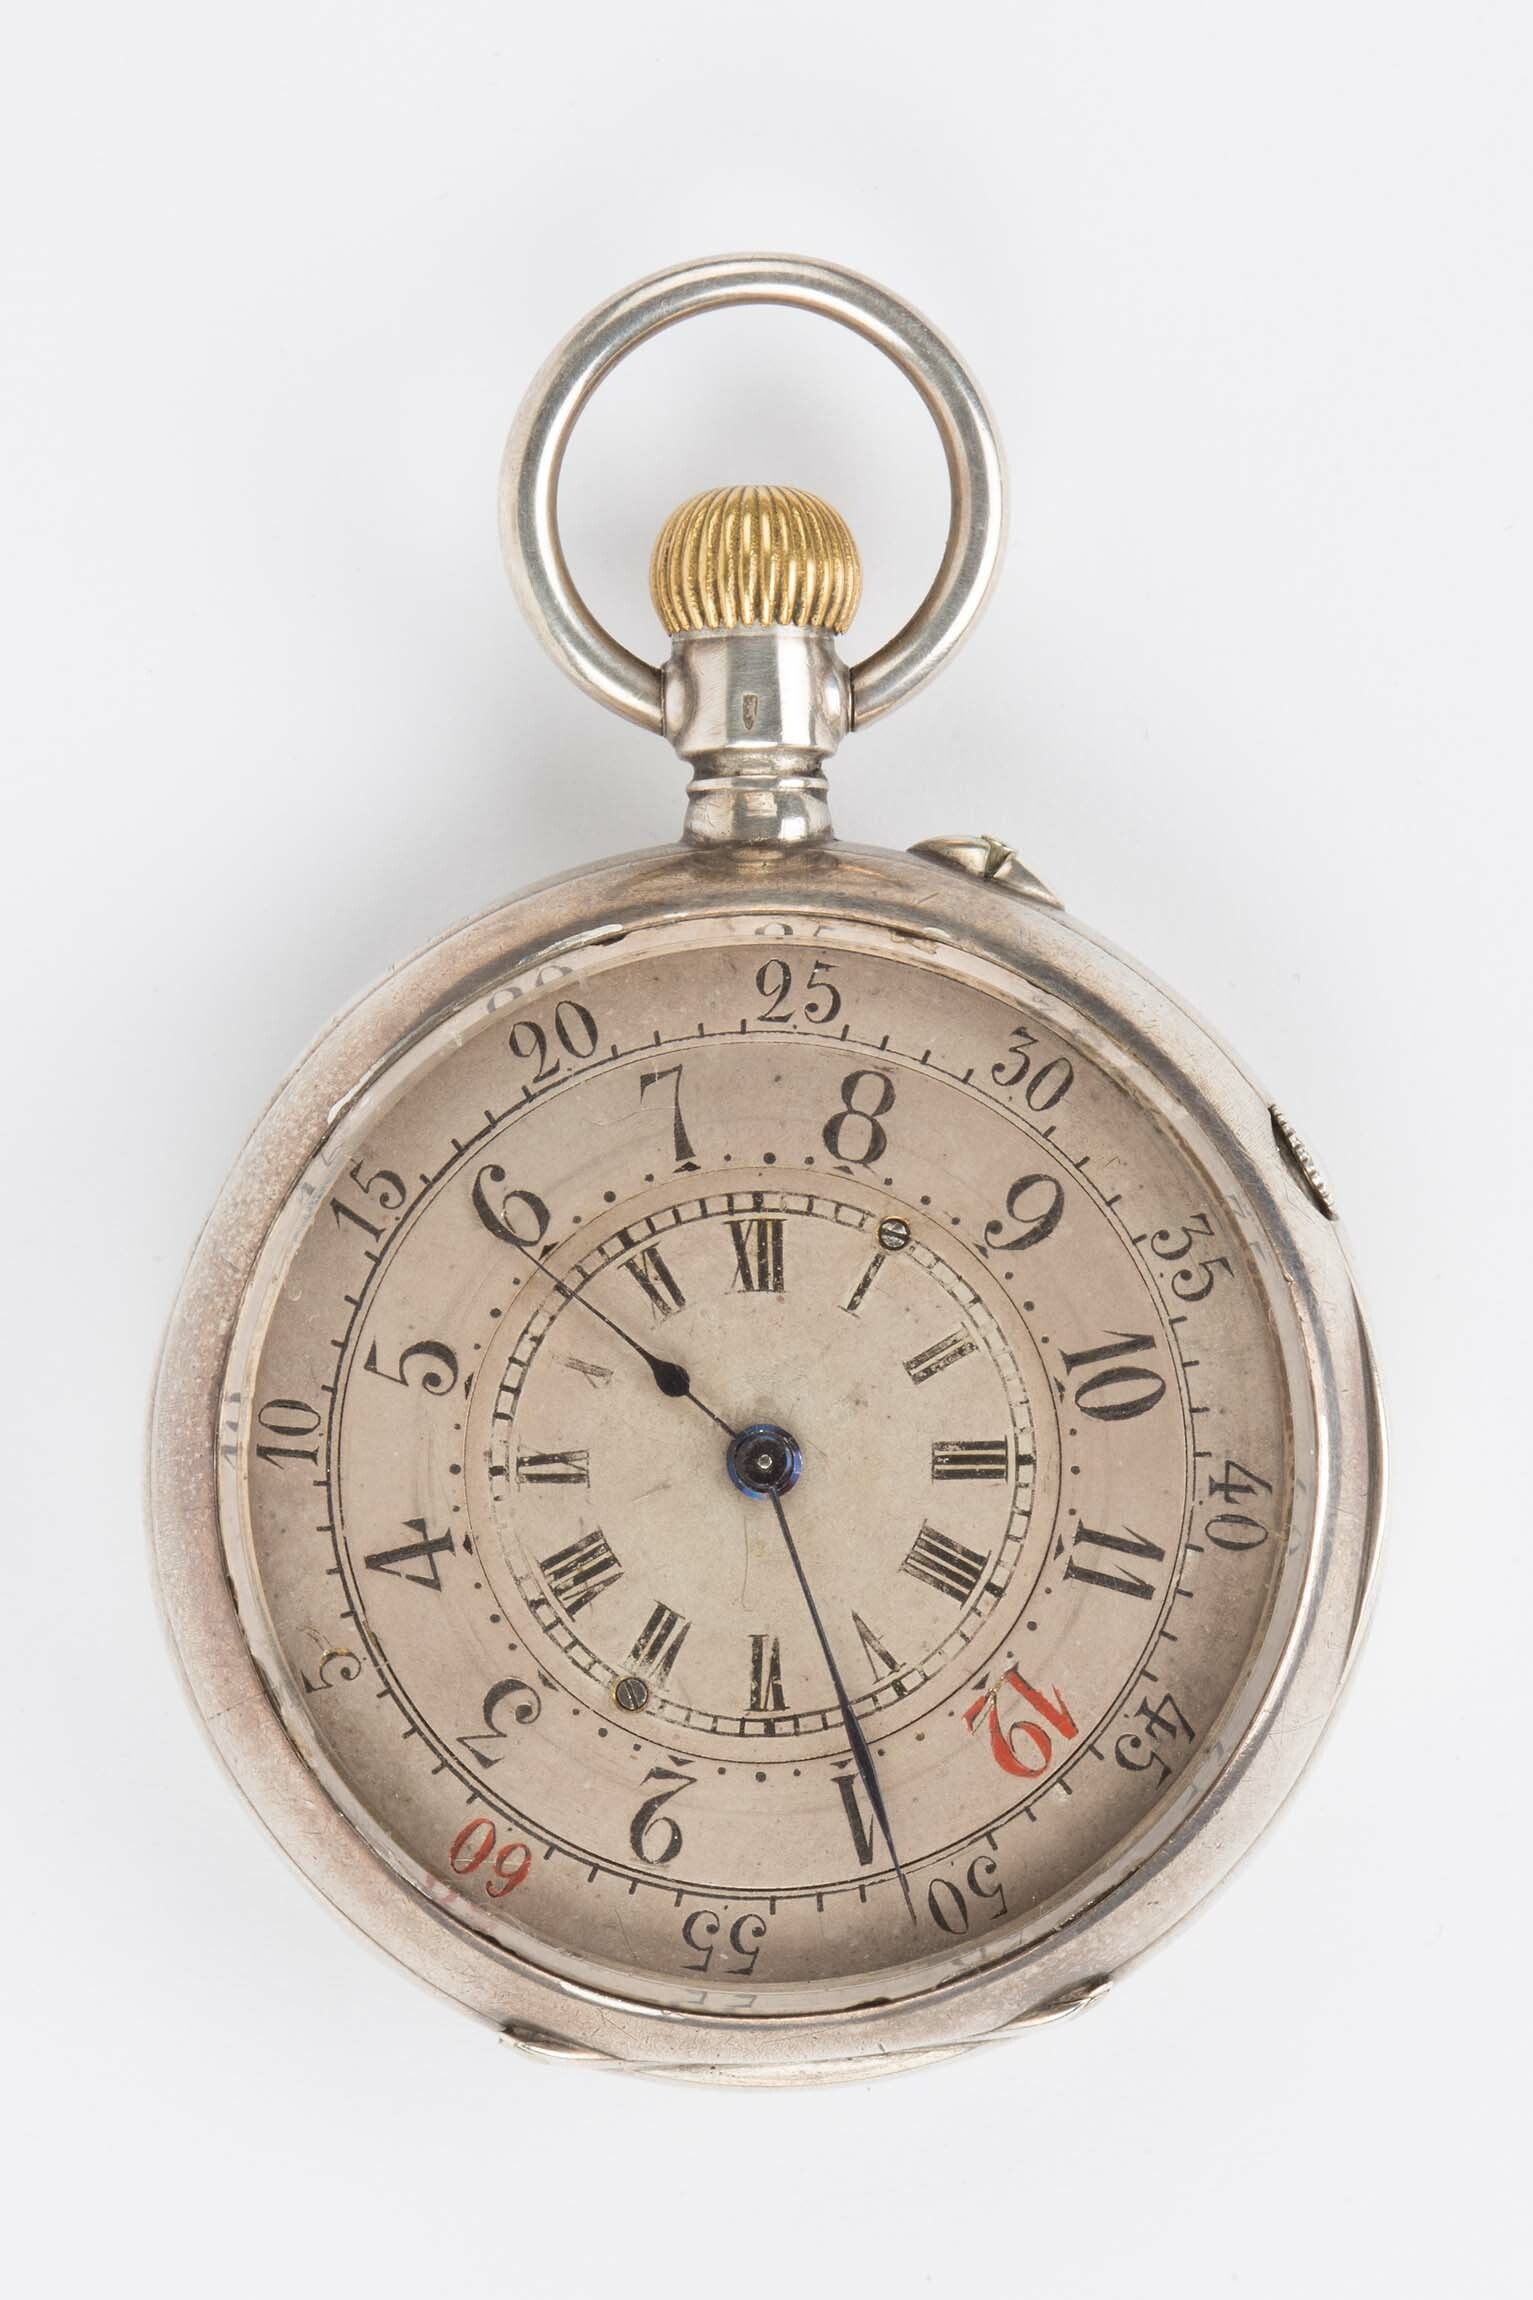 Taschenuhr und Zeitvergleichungs-Tabelle, J. Tolayan, Schweiz/Konstantinopel, um 1895 (Deutsches Uhrenmuseum CC BY-SA)